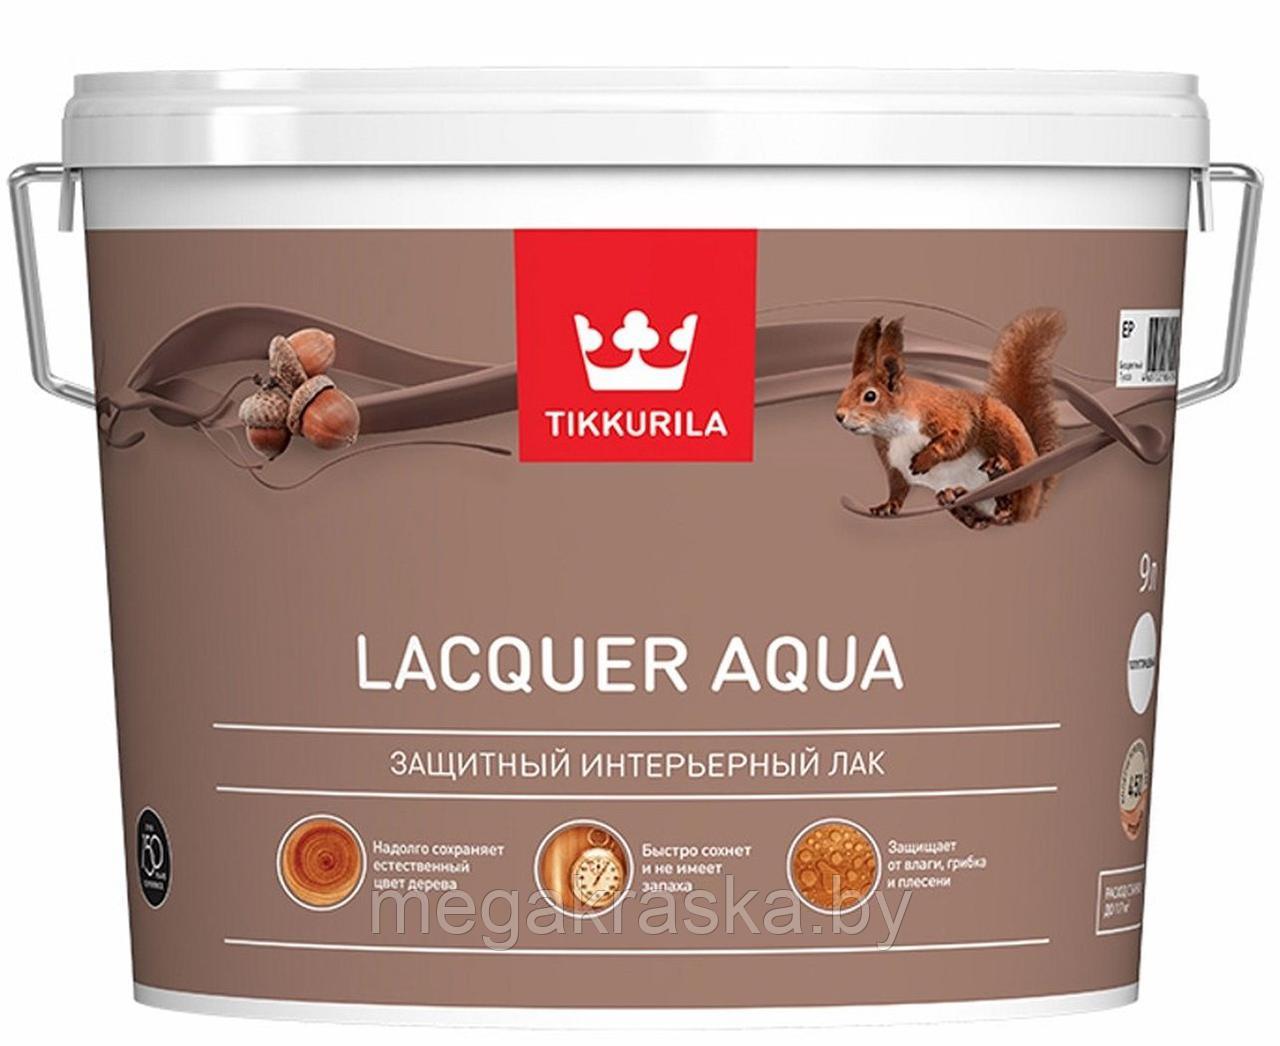 Tikkurila lacquer aqua - Лак аква интерьерный полуглянцевый 2,7л.